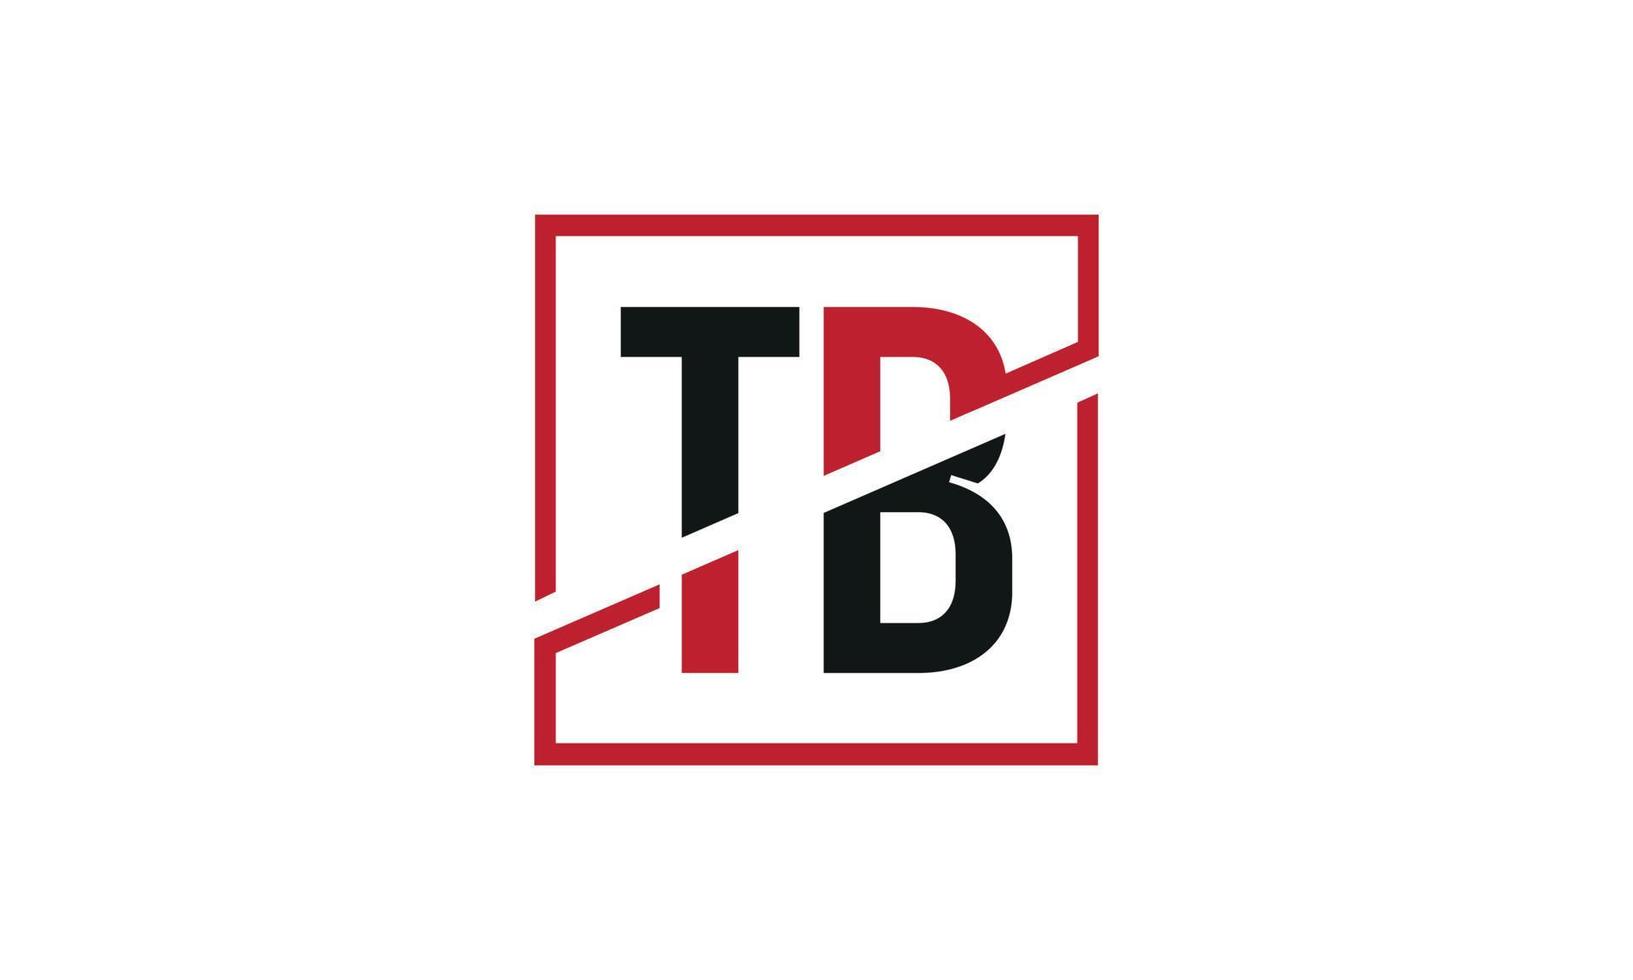 Buchstabe TB Logo Pro-Vektordatei Pro-Vektor vektor